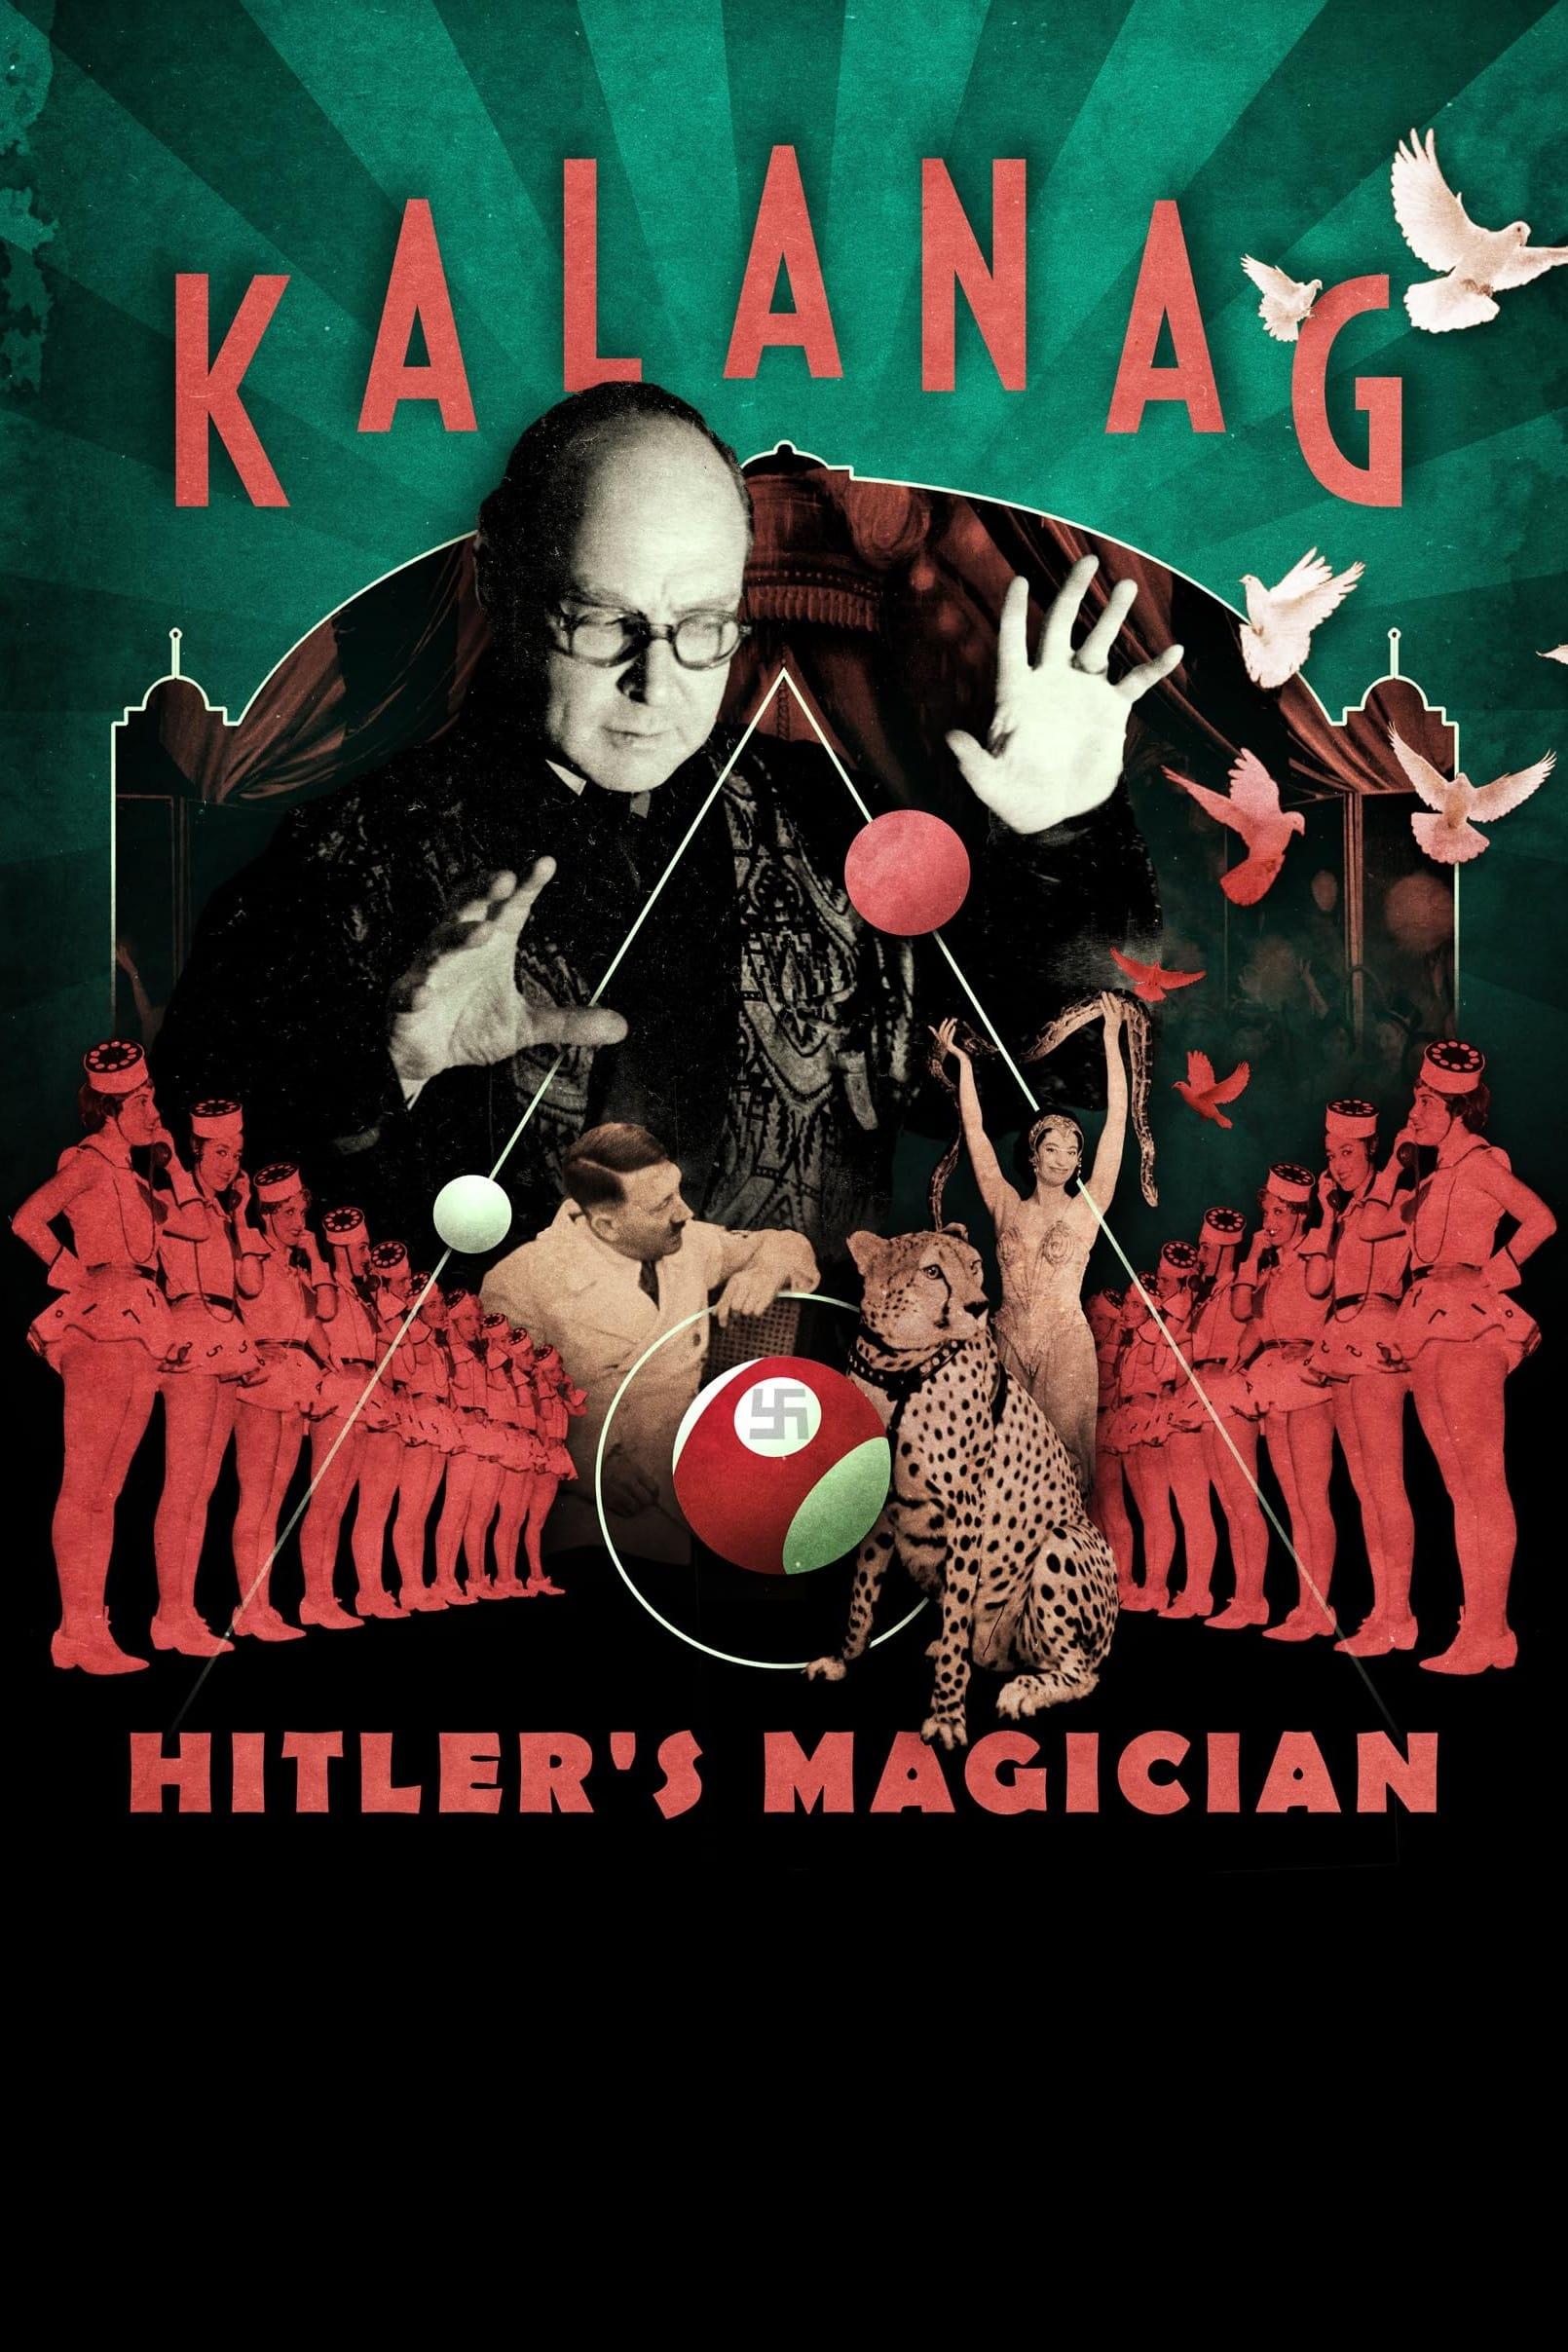 Kalanag: Hitler's Magician poster